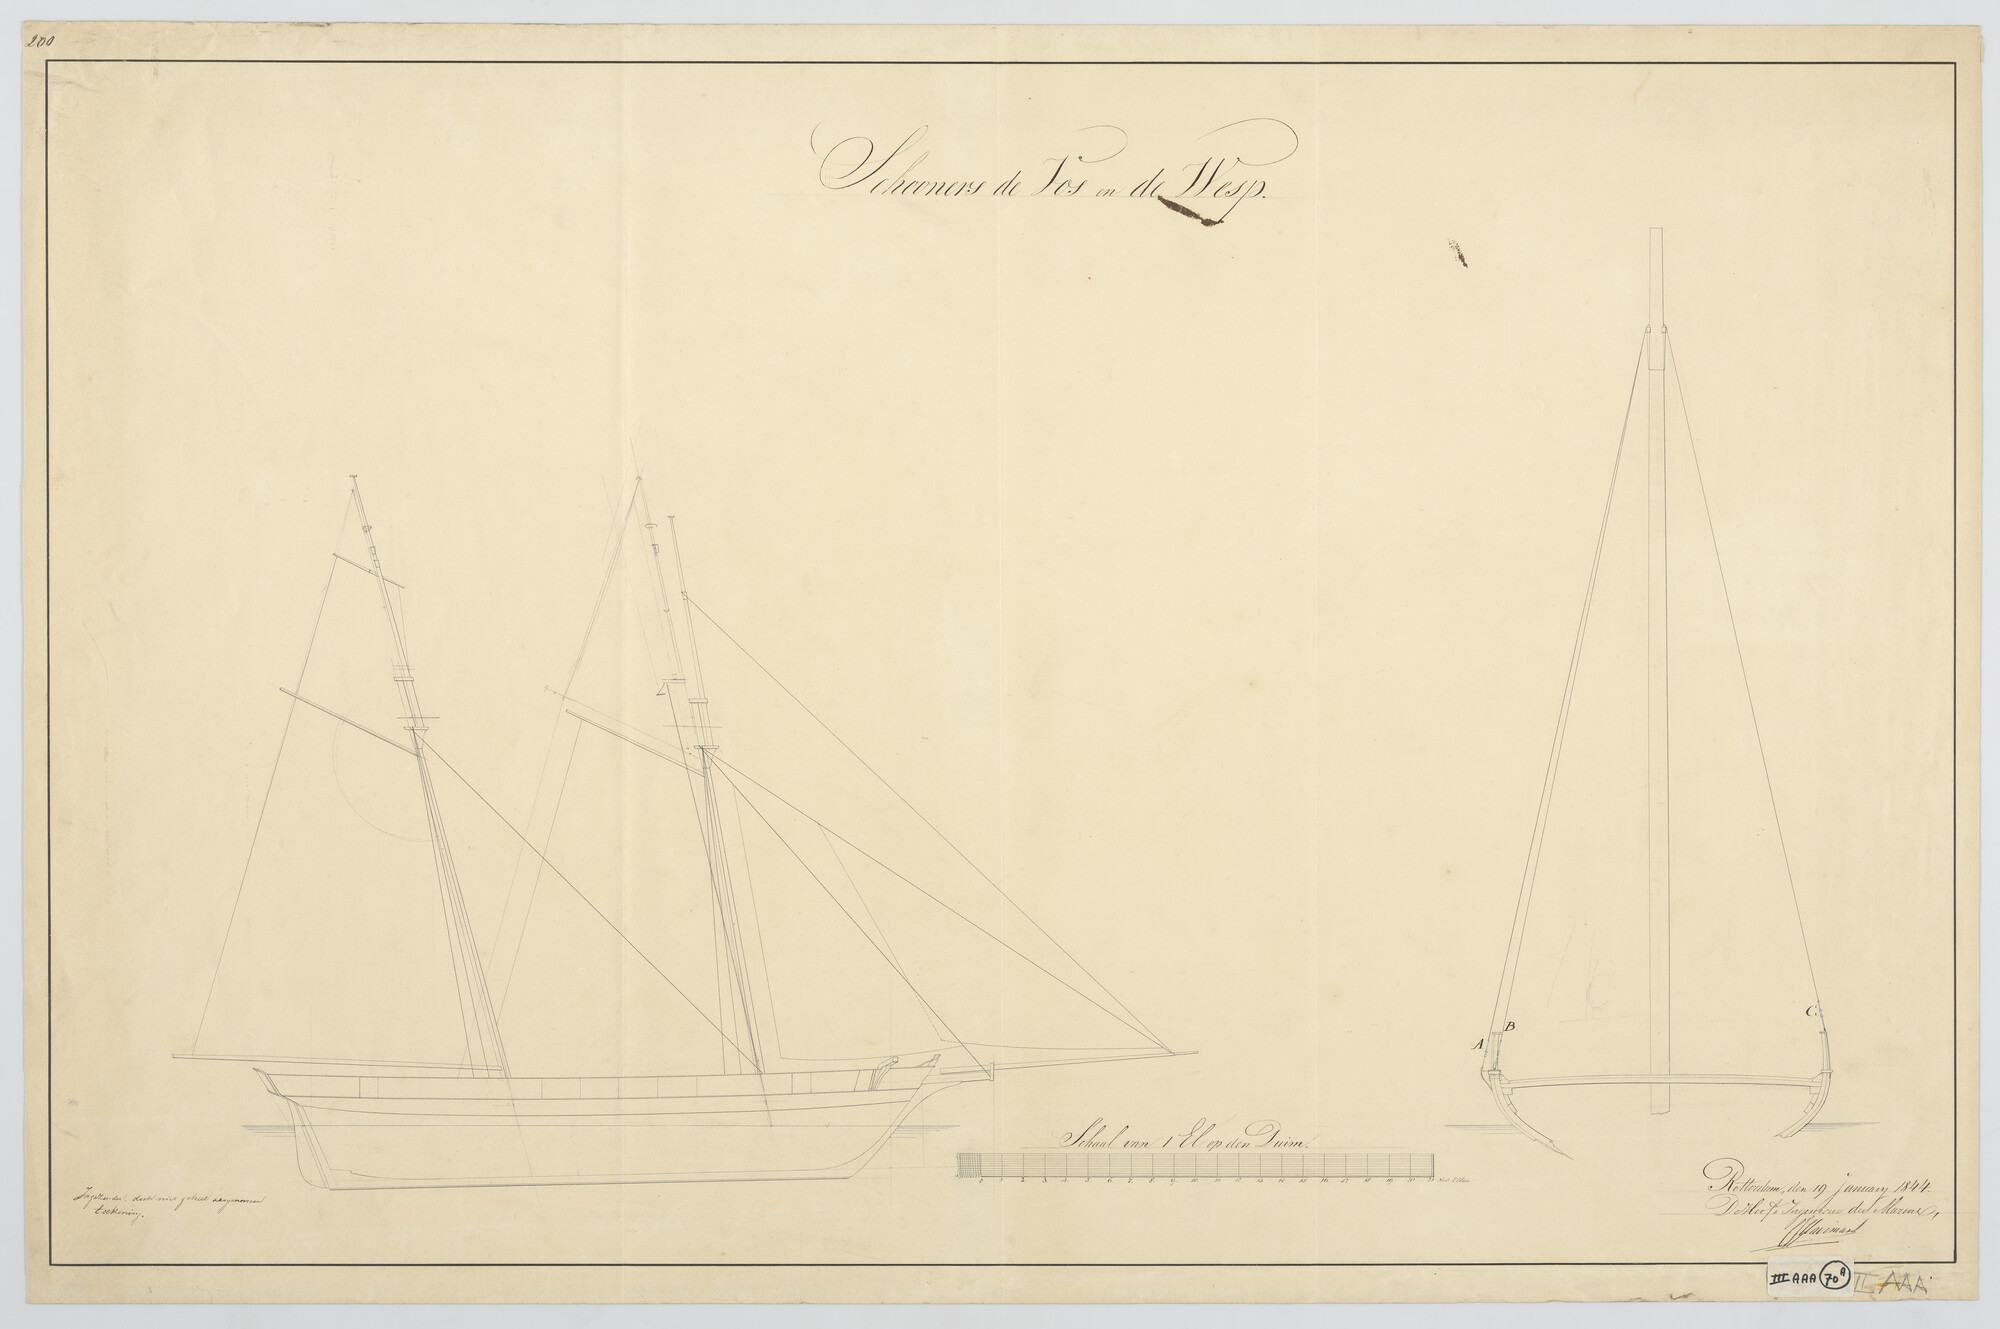 S.0600(01)070; Tuigplan van de schoeners Hr.Ms. 'Vos' en 'Wesp'; technische tekening